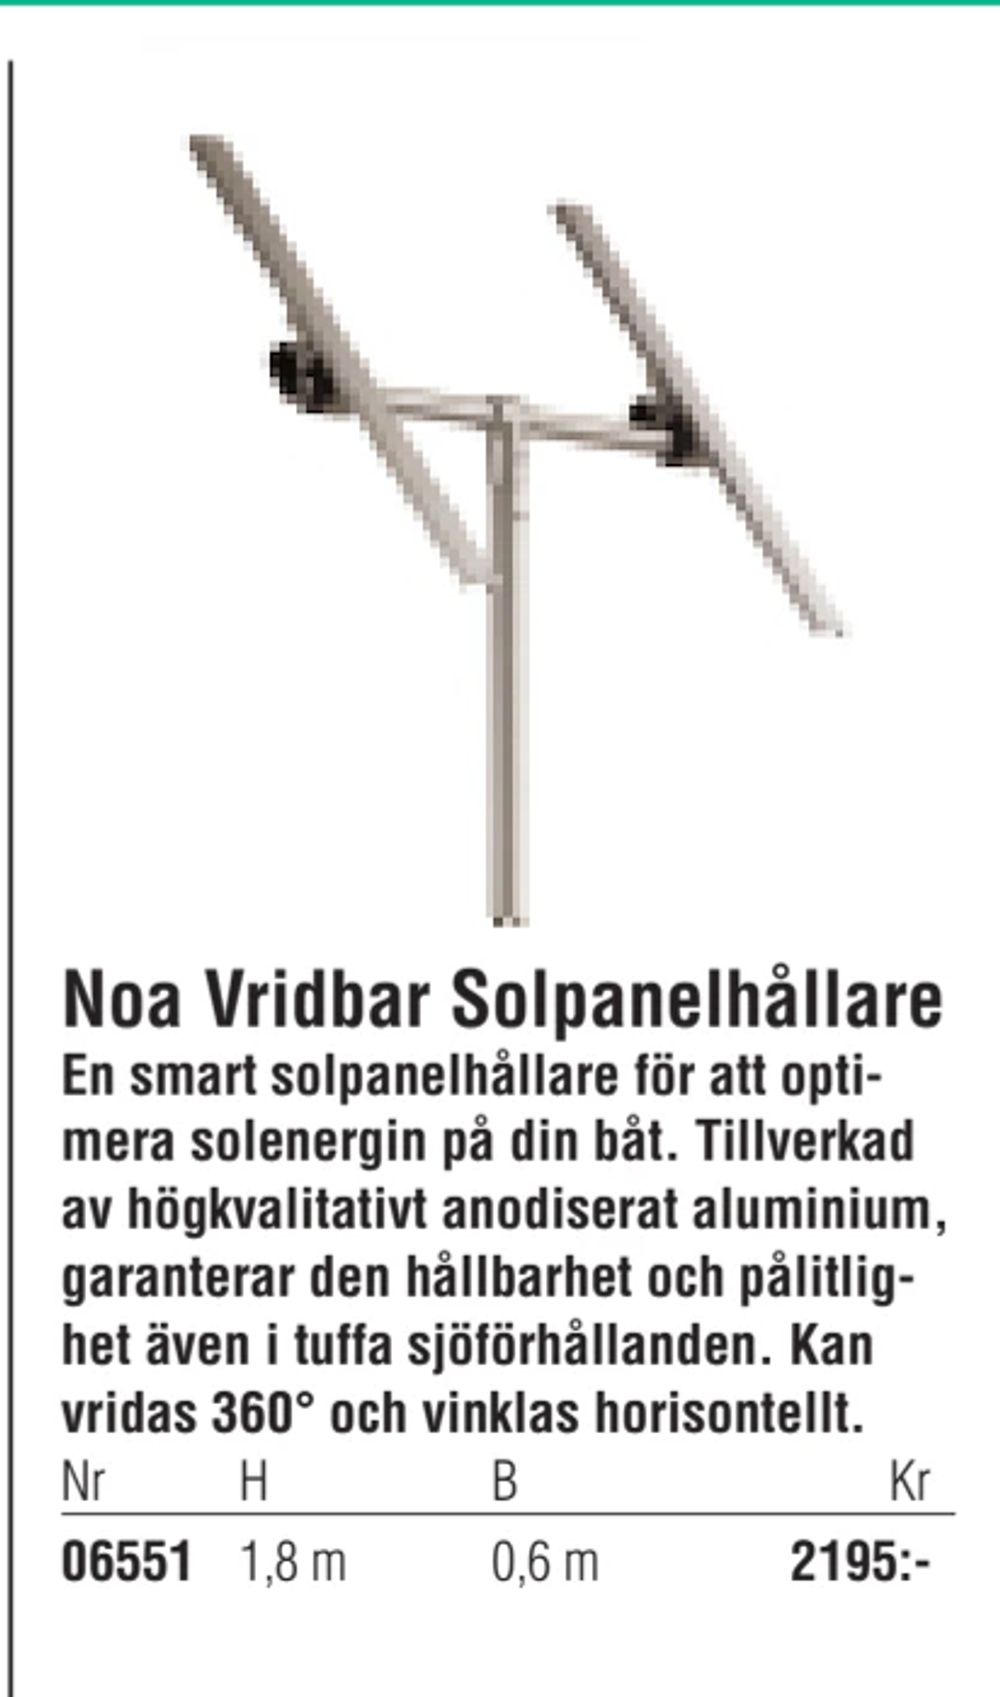 Erbjudanden på Noa Vridbar Solpanelhållare från Erlandsons Brygga för 2 195 kr